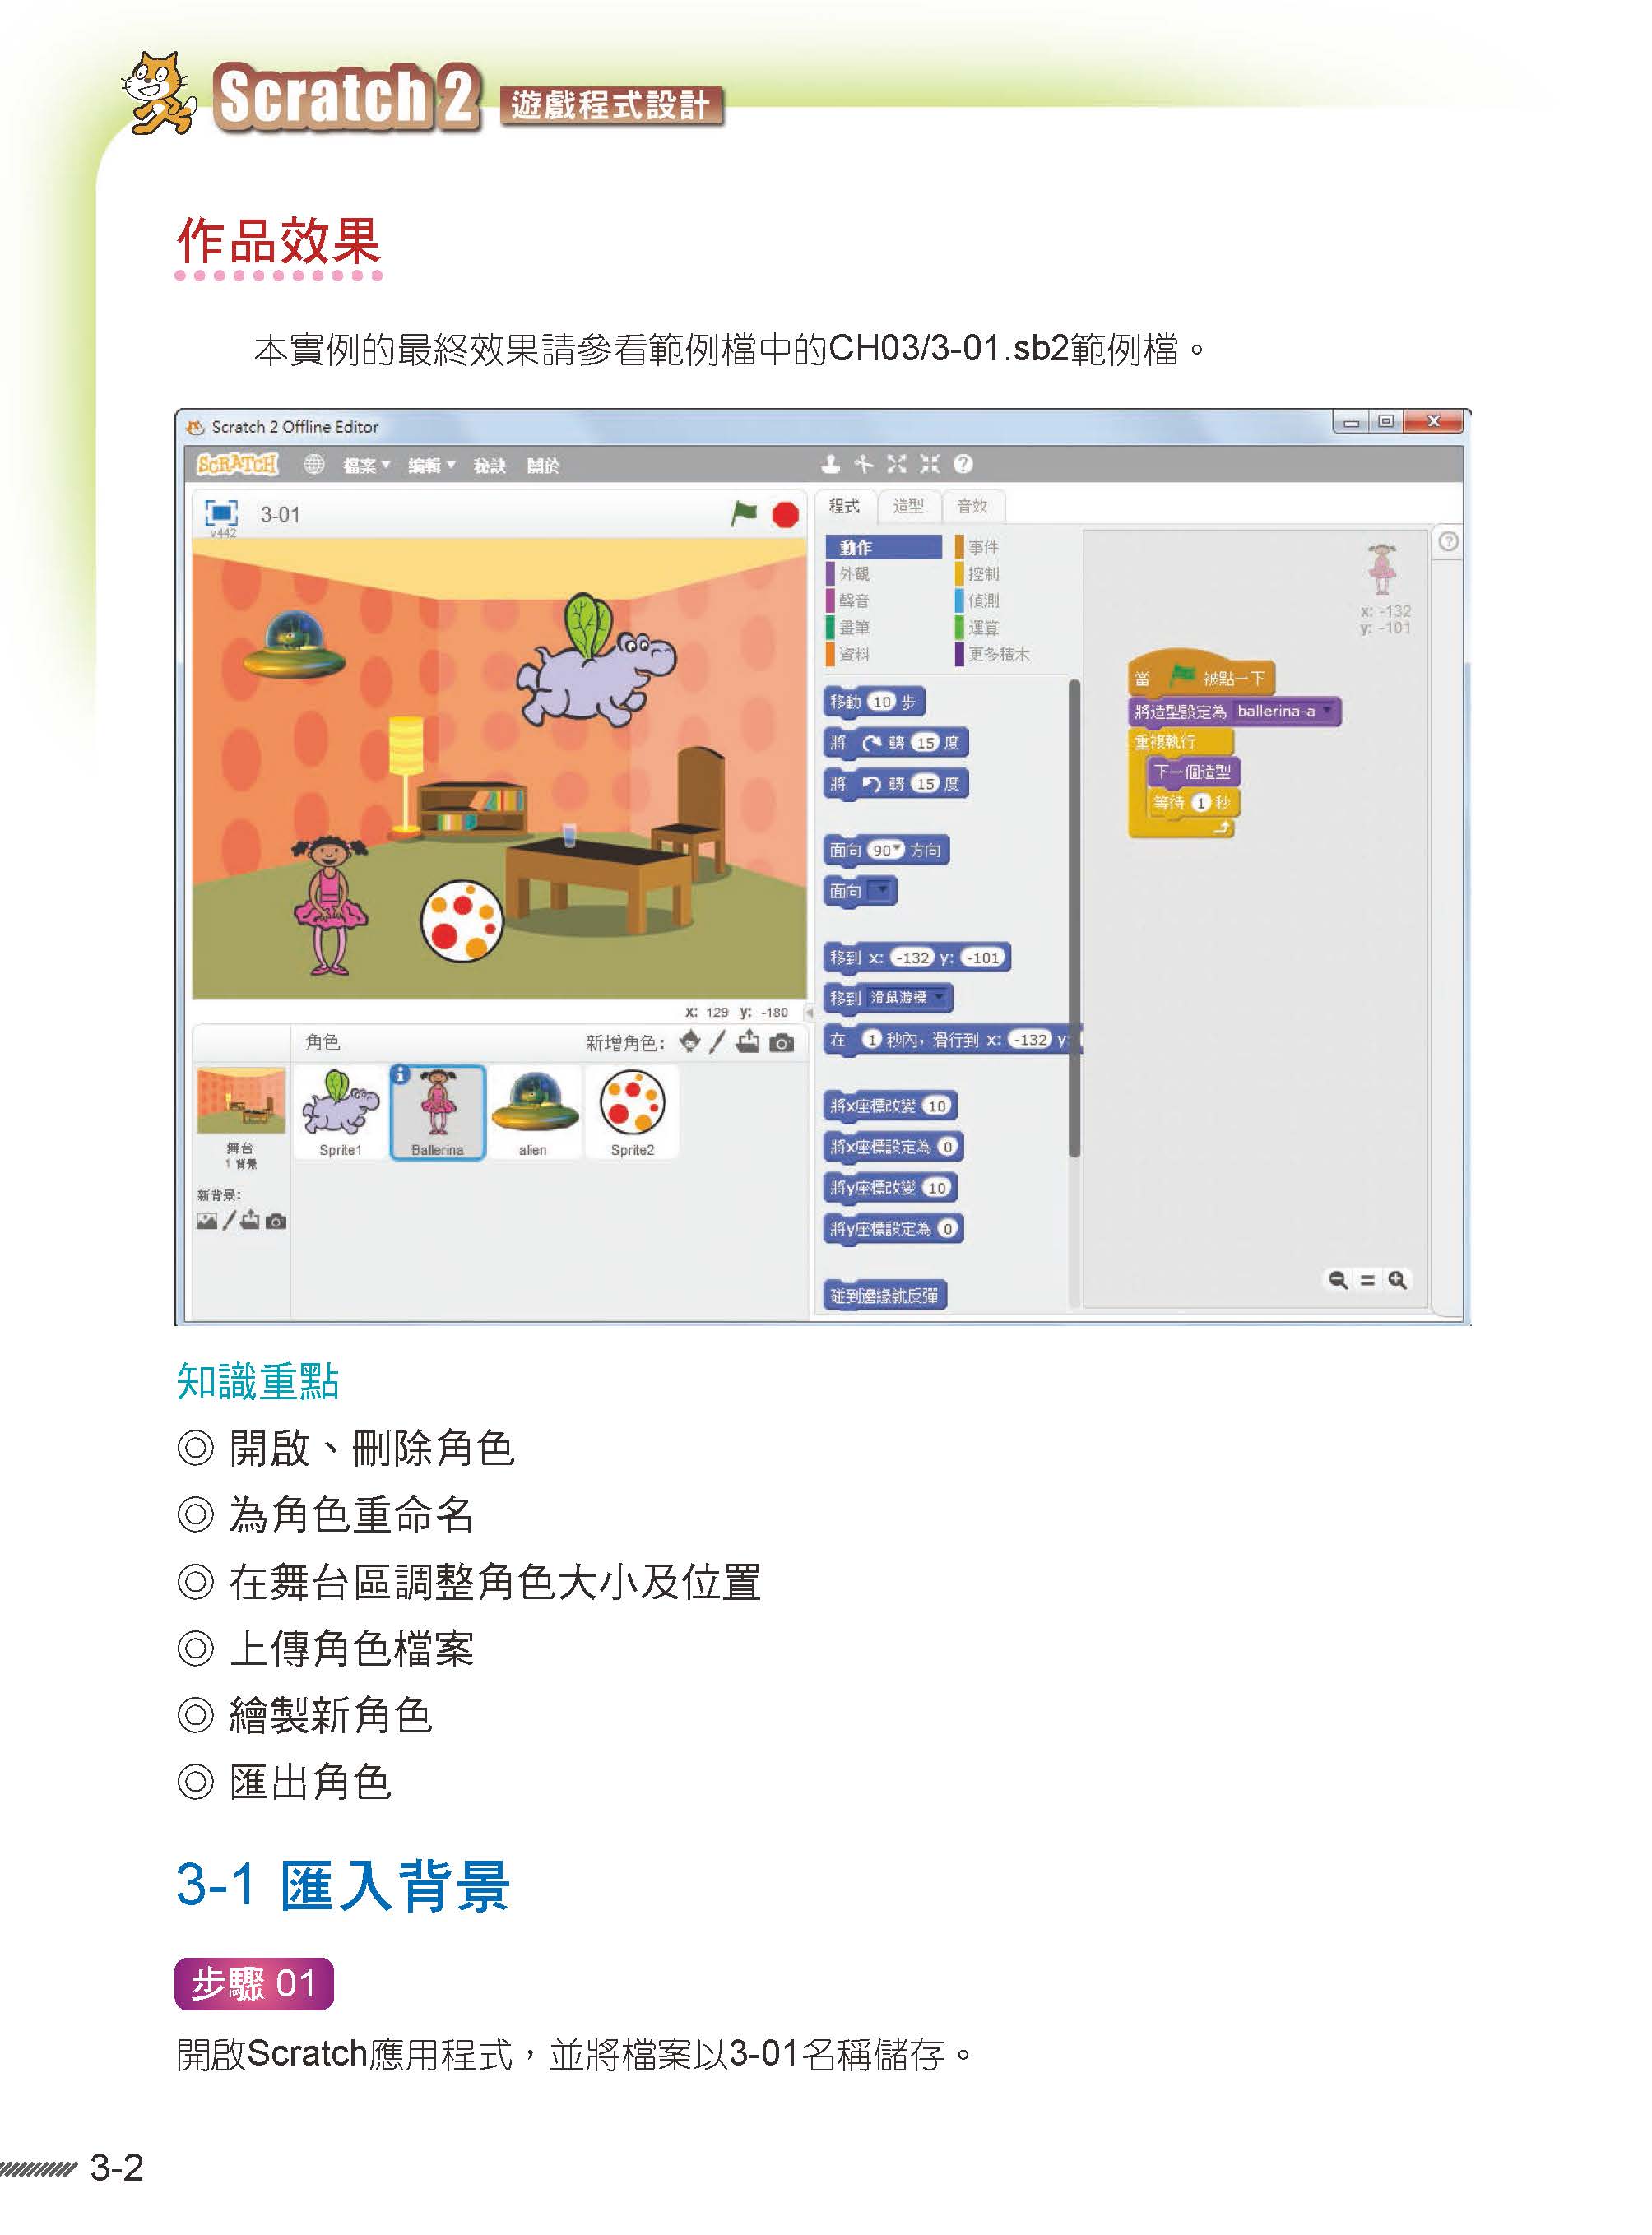 ►GO►最新優惠► 【書籍】Scratch 2.X 遊戲程式設計(附綠色範例檔)